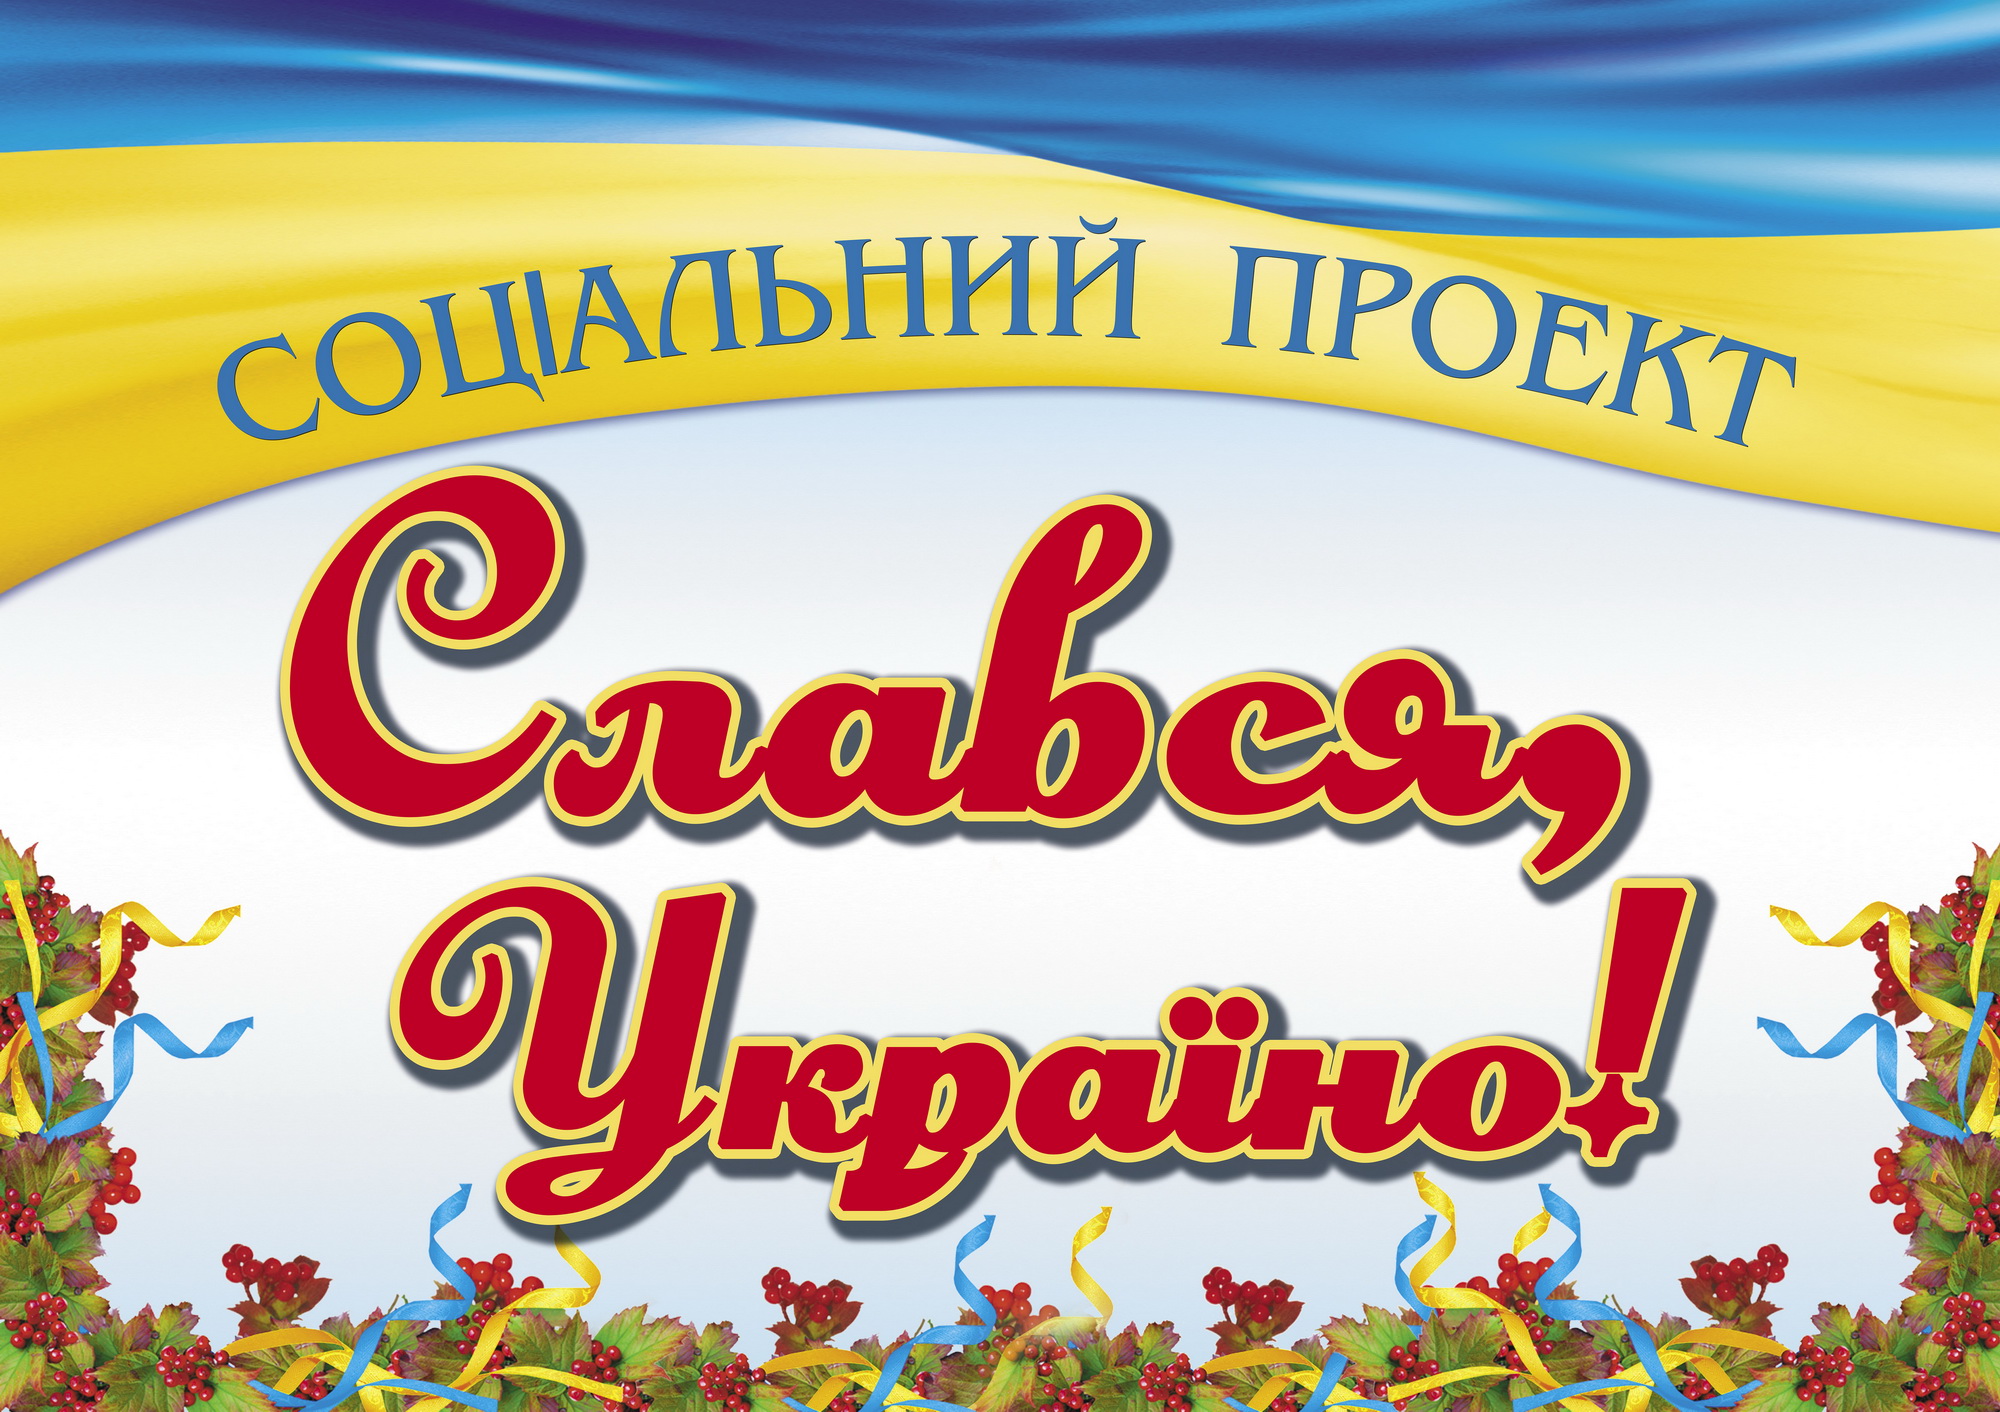 Слався, Україно!